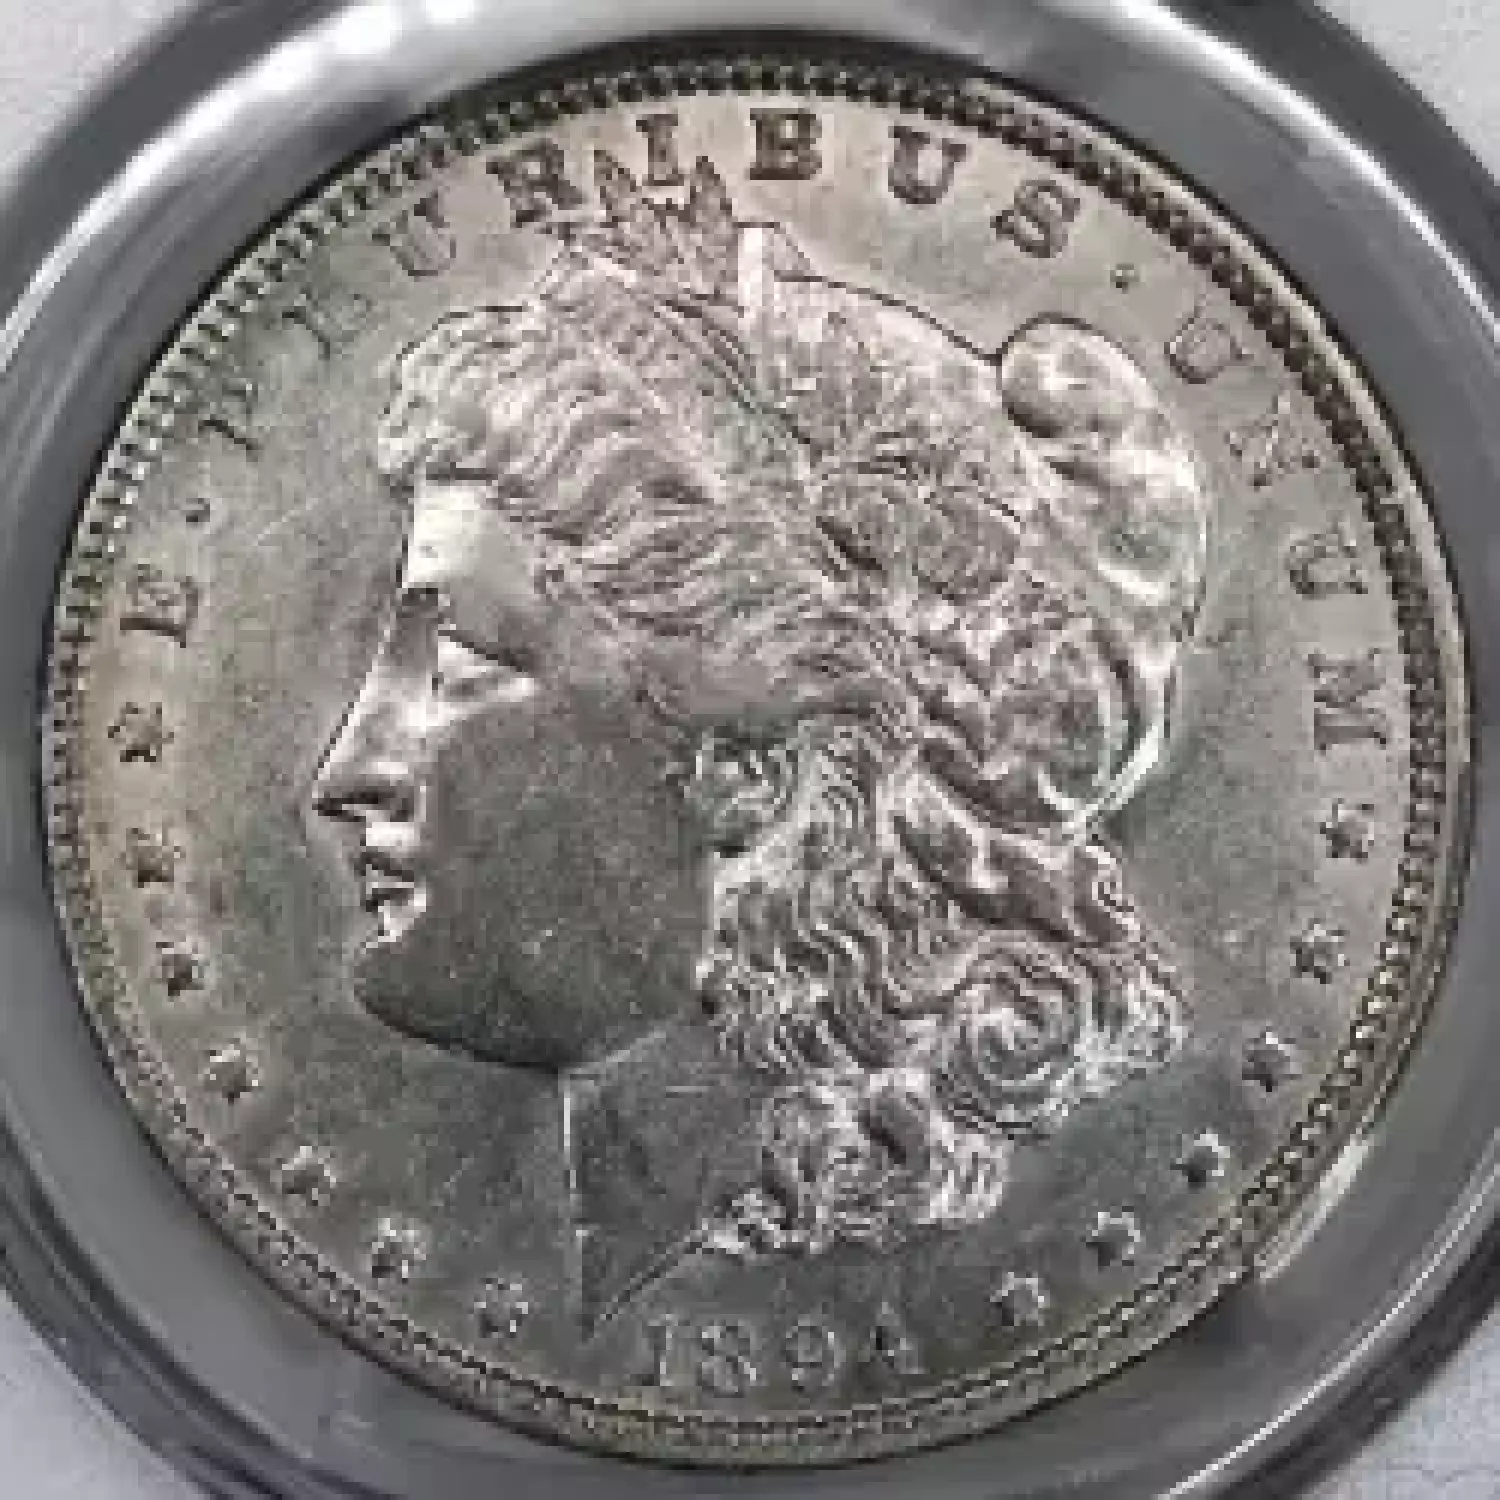 1894-O $1 (2)